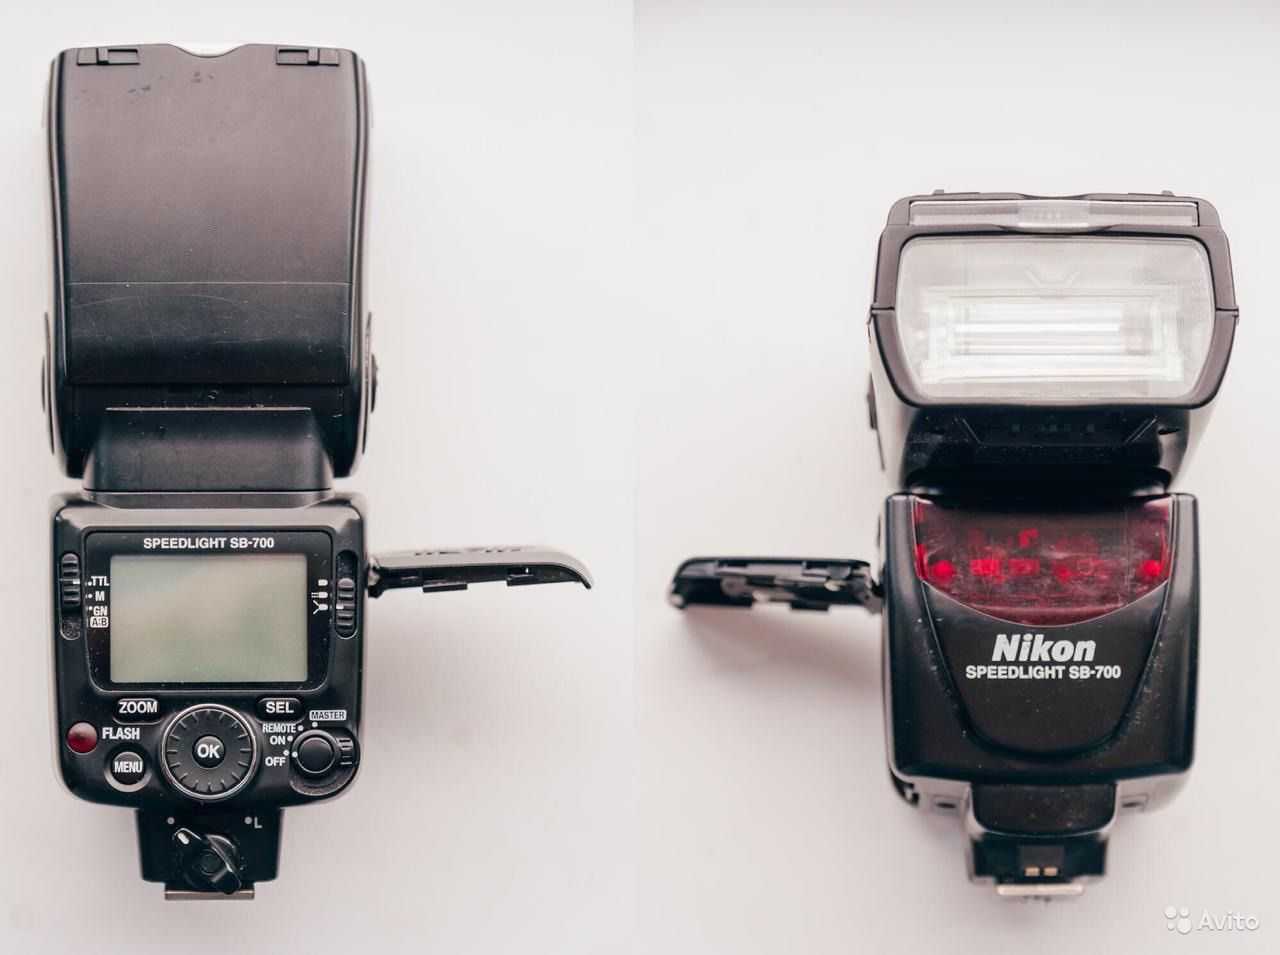 Фотовспышка nikon speedlight sb-700 (fsa03901) купить от 19990 руб в волгограде, сравнить цены, отзывы, видео обзоры и характеристики